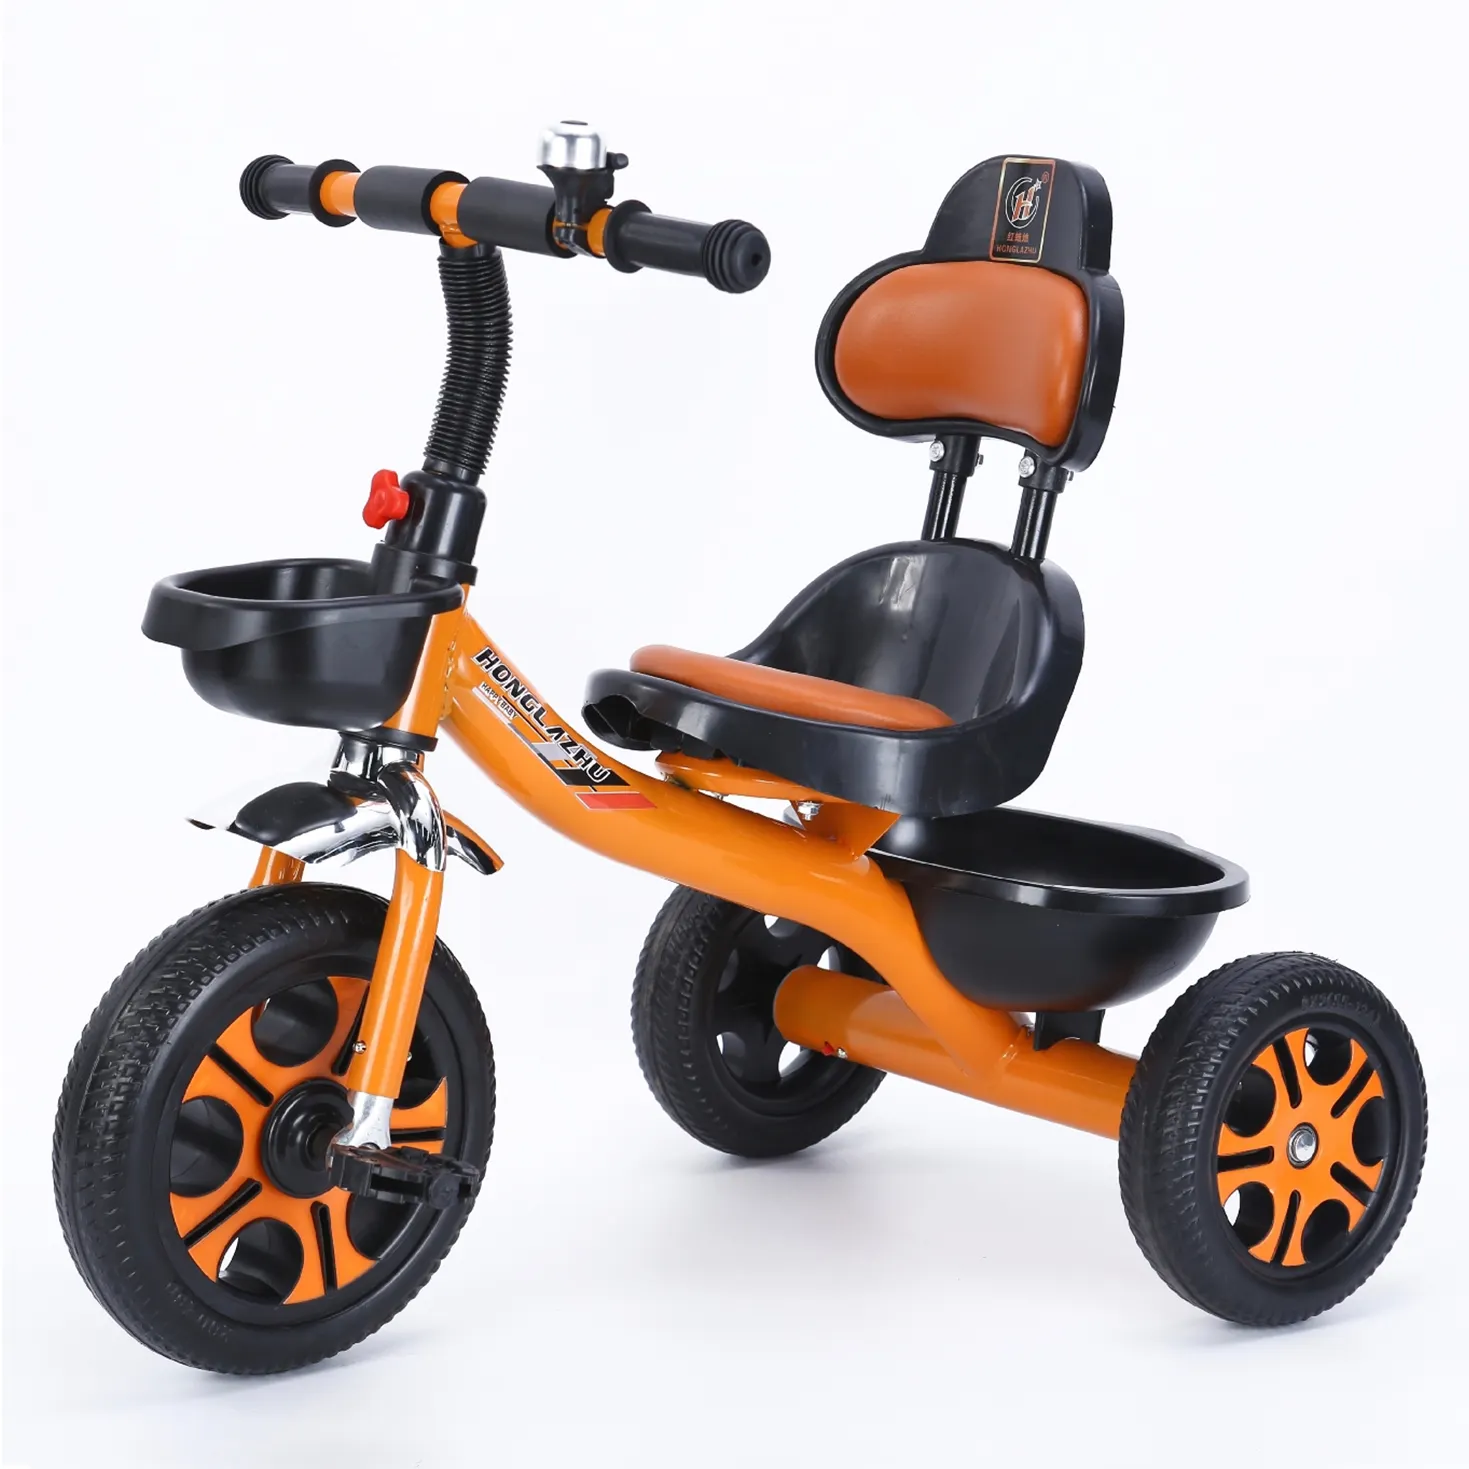 Sepeda roda tiga anak-anak, pit kulit lembut sandaran lengan tinggi dengan mainan 3 roda